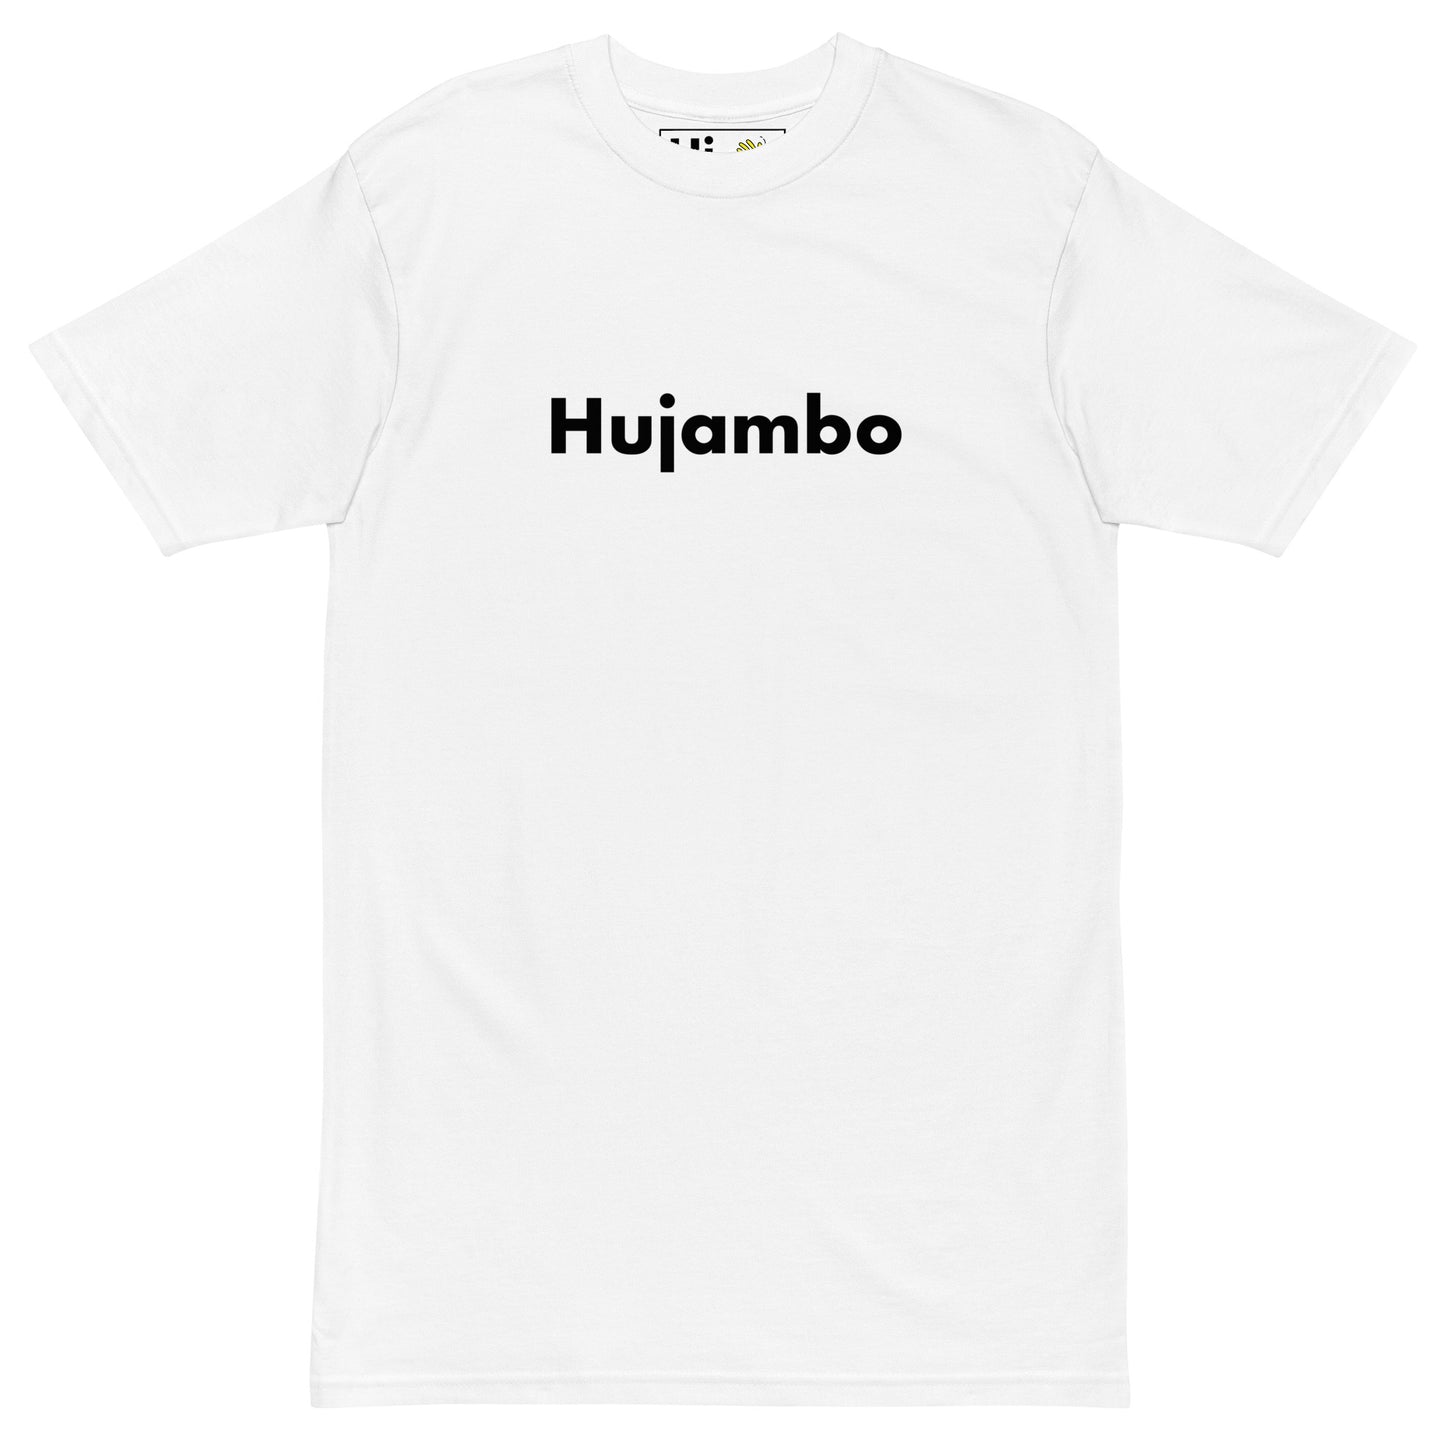 Hi Hujambo Swahili